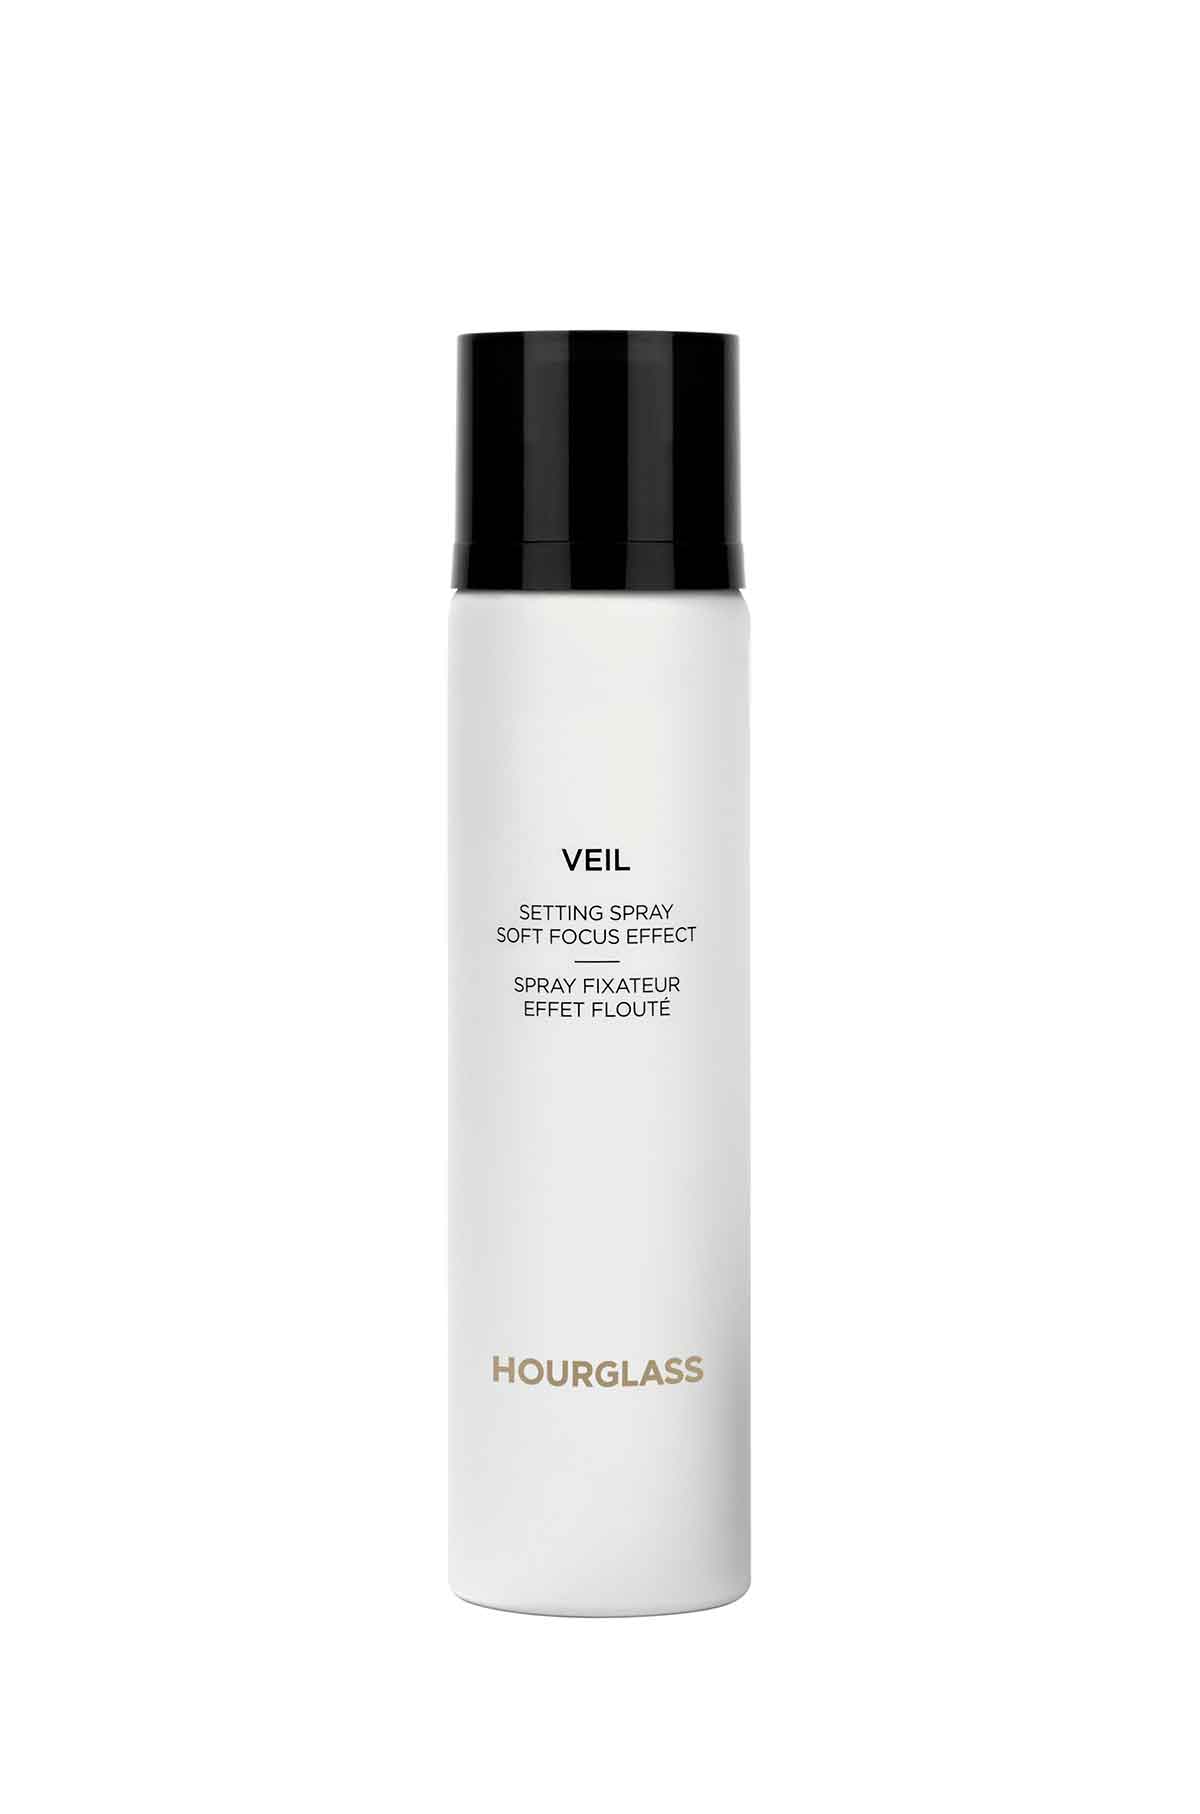 Hourglass-Veil-Soft-Focus-Setting-Spray